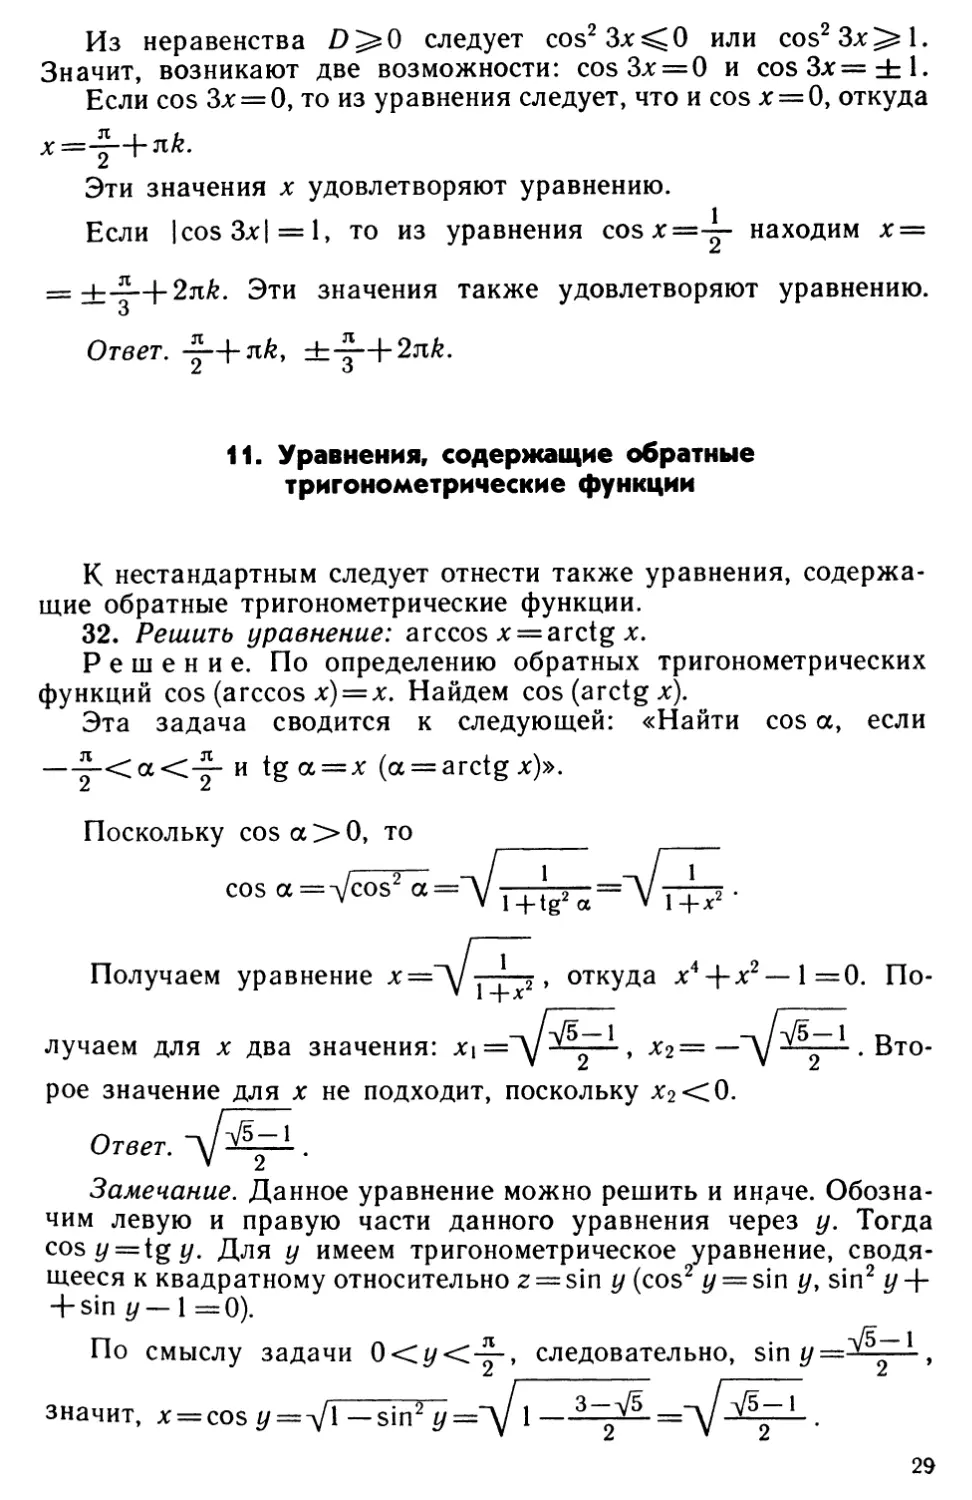 11. Уравнения, содержащие обратные тригонометрические функции